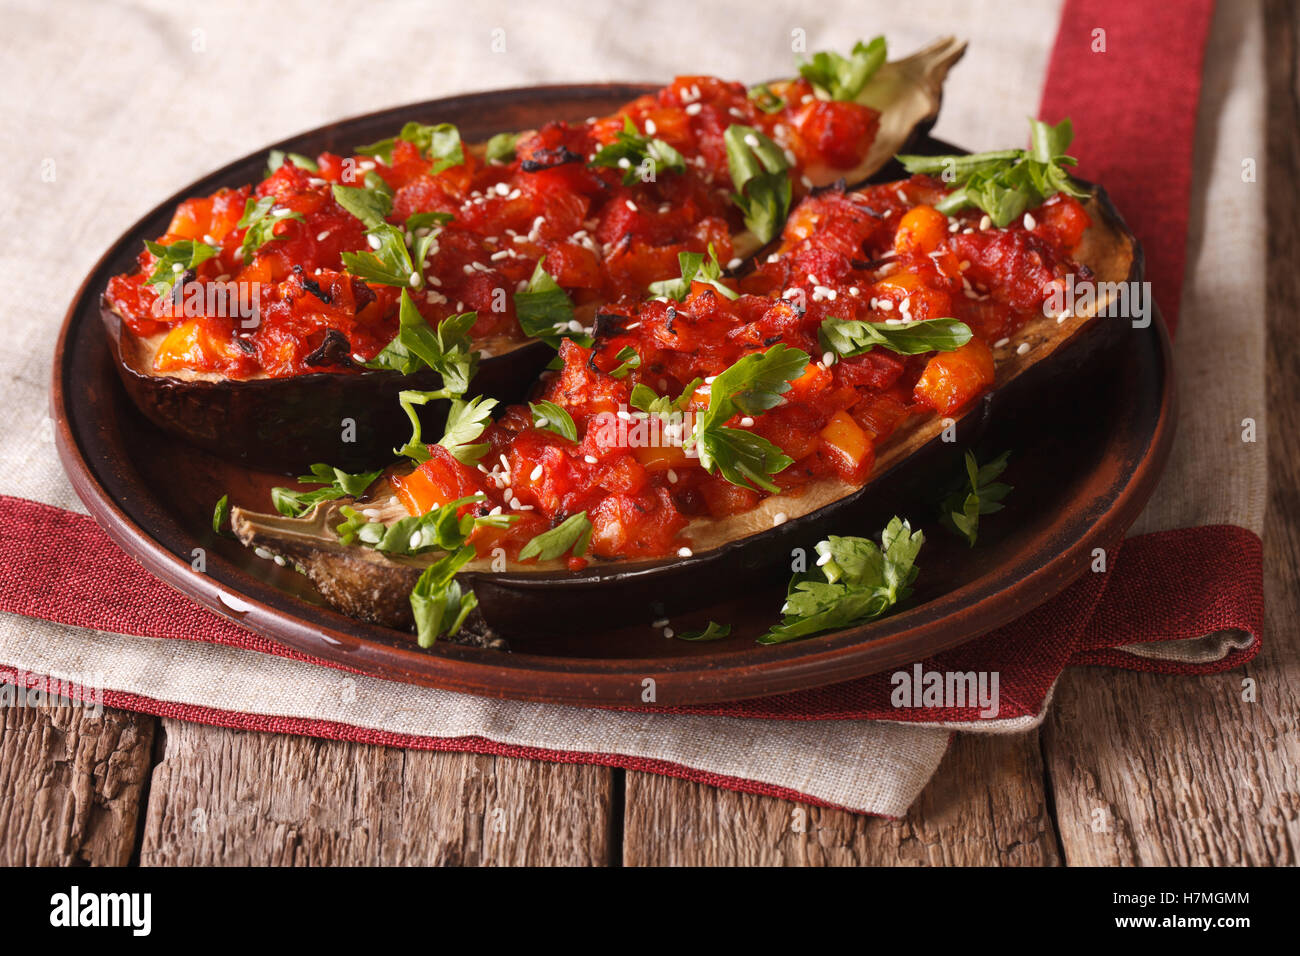 Les moitiés d'aubergine cuite turc farci aux légumes close-up sur une plaque horizontale. Banque D'Images